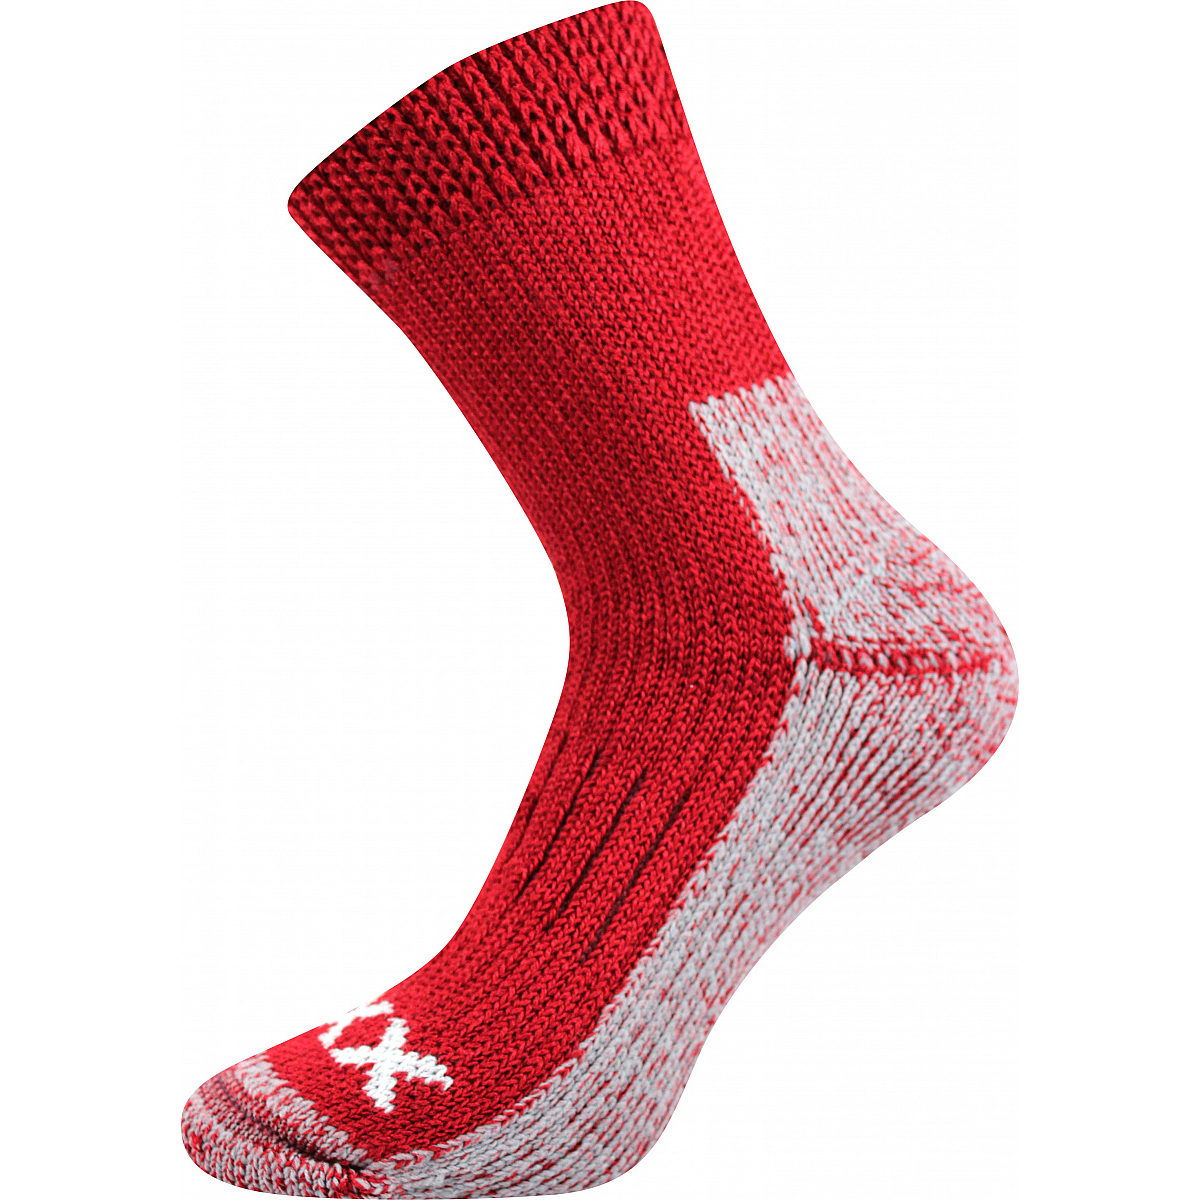 Extra teplé vlněné ponožky Voxx Alpin - červené-šedé, 35-38